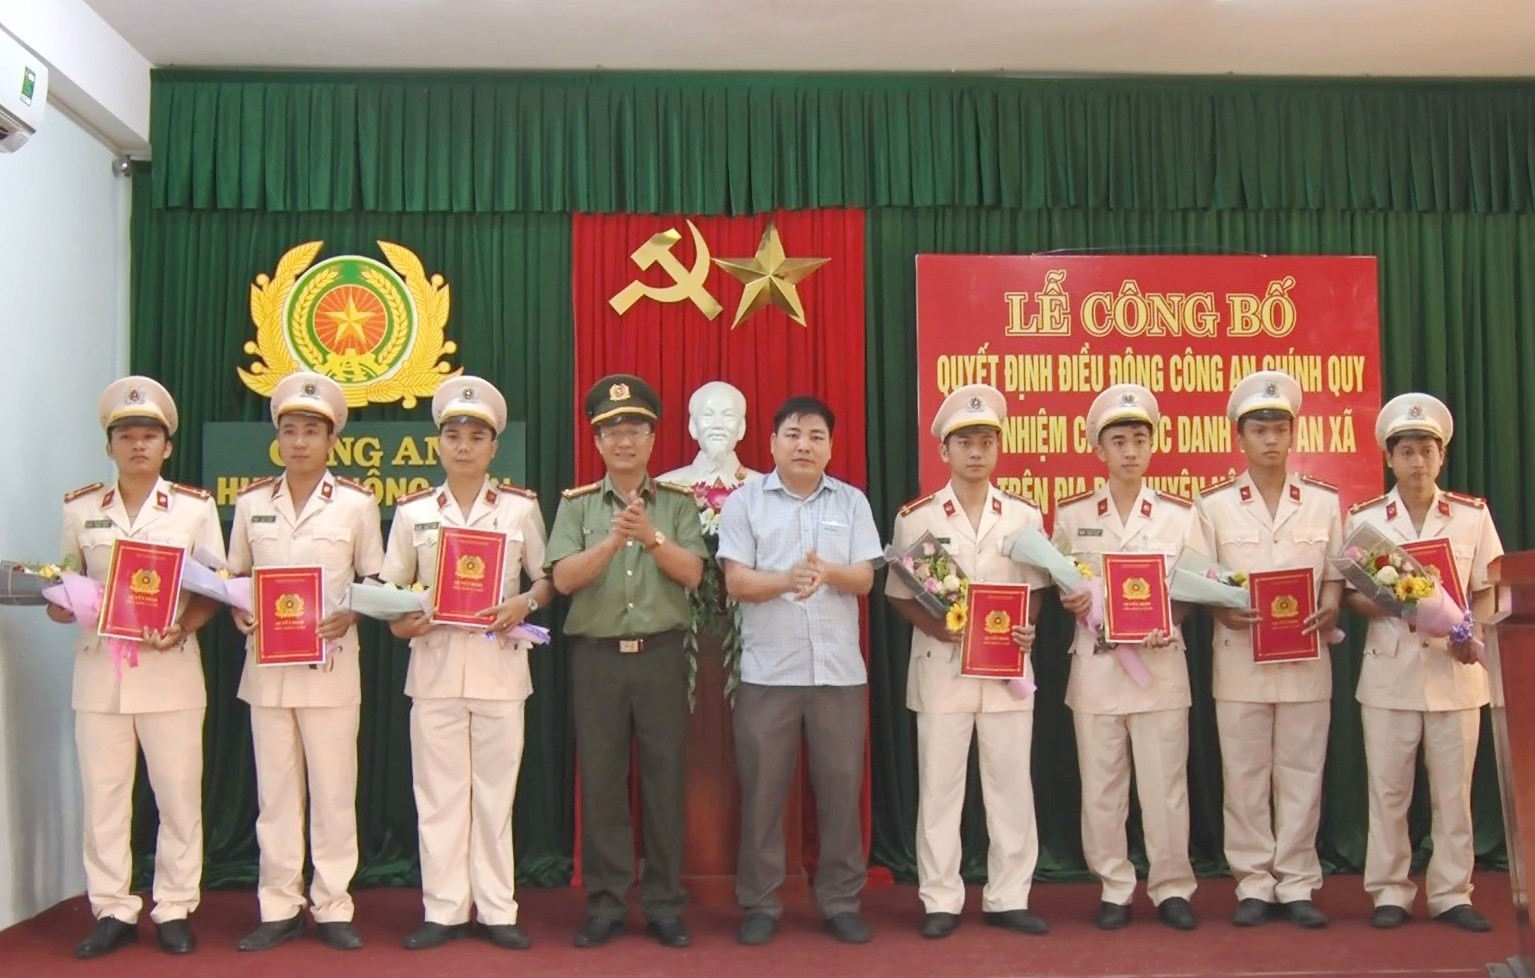 Thượng tá Nguyễn Thành Long – Phó Giám đốc Công an tỉnh và lãnh đạo huyện Nông Sơn trao quyết định điều động cán bộ công an chính quy đảm nhiệm các chức danh công an xã.